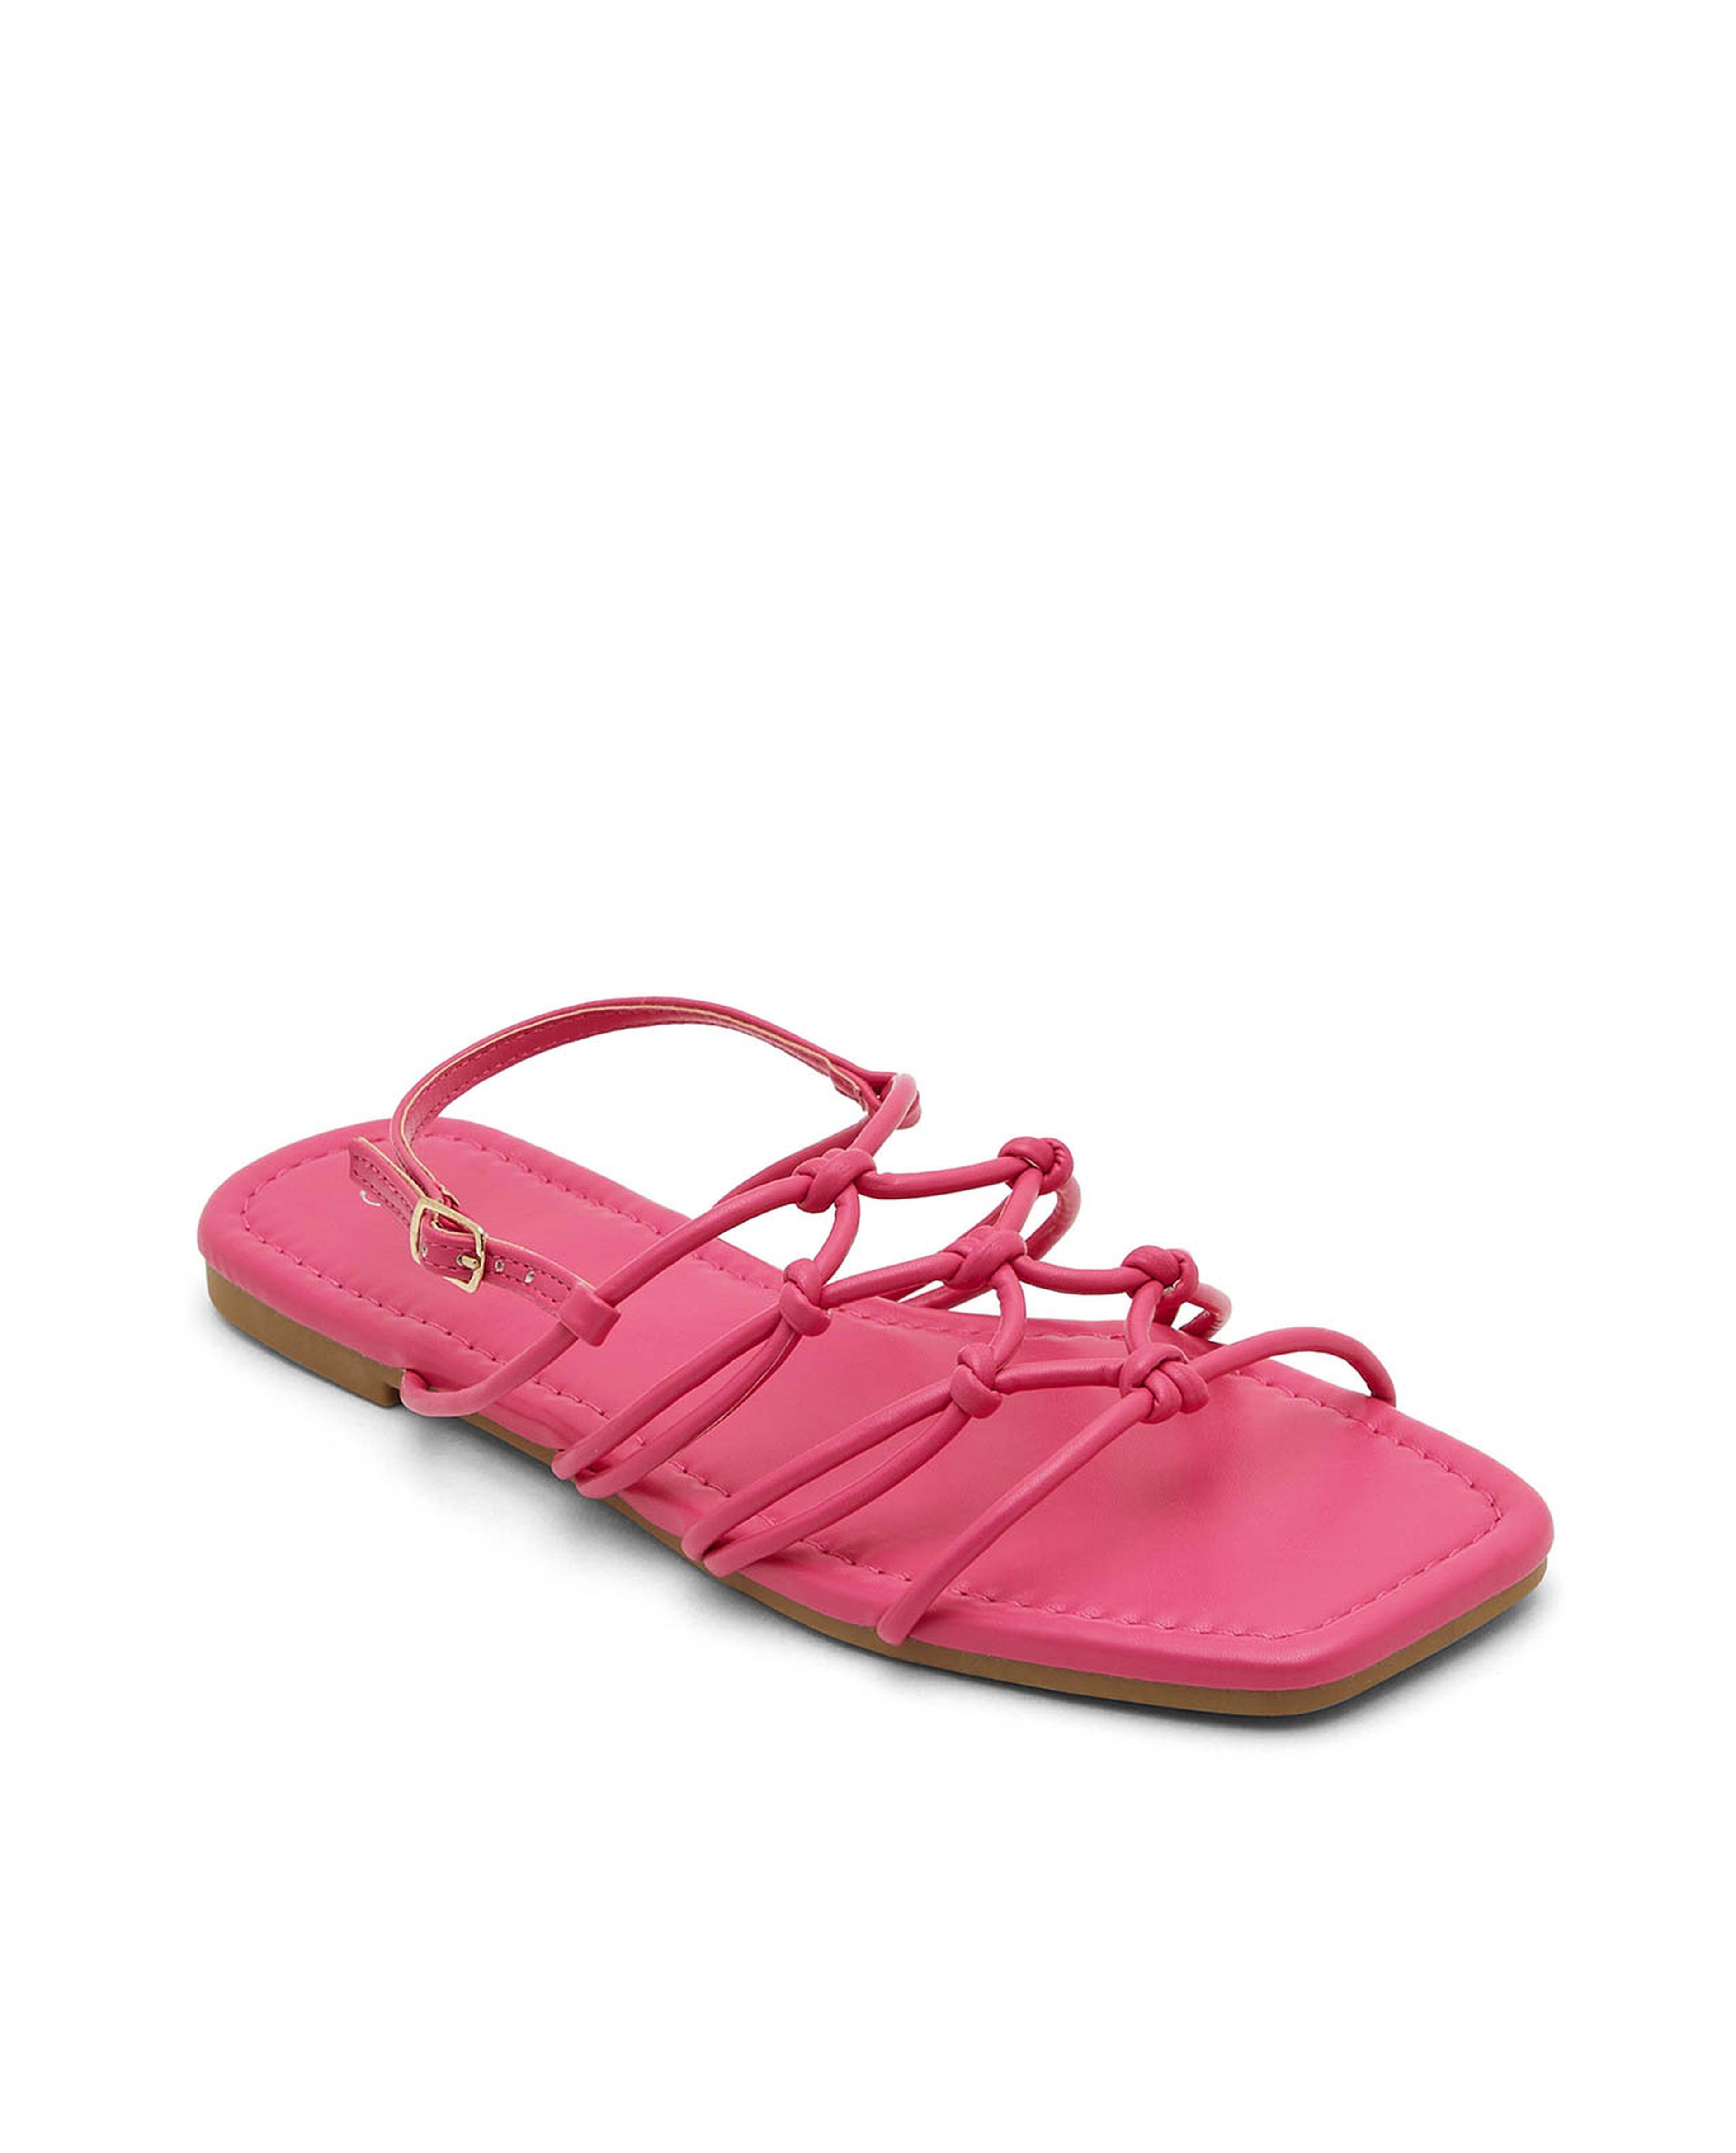 Buy GNIST Hot Pink Tie Up Flat Sandal Online